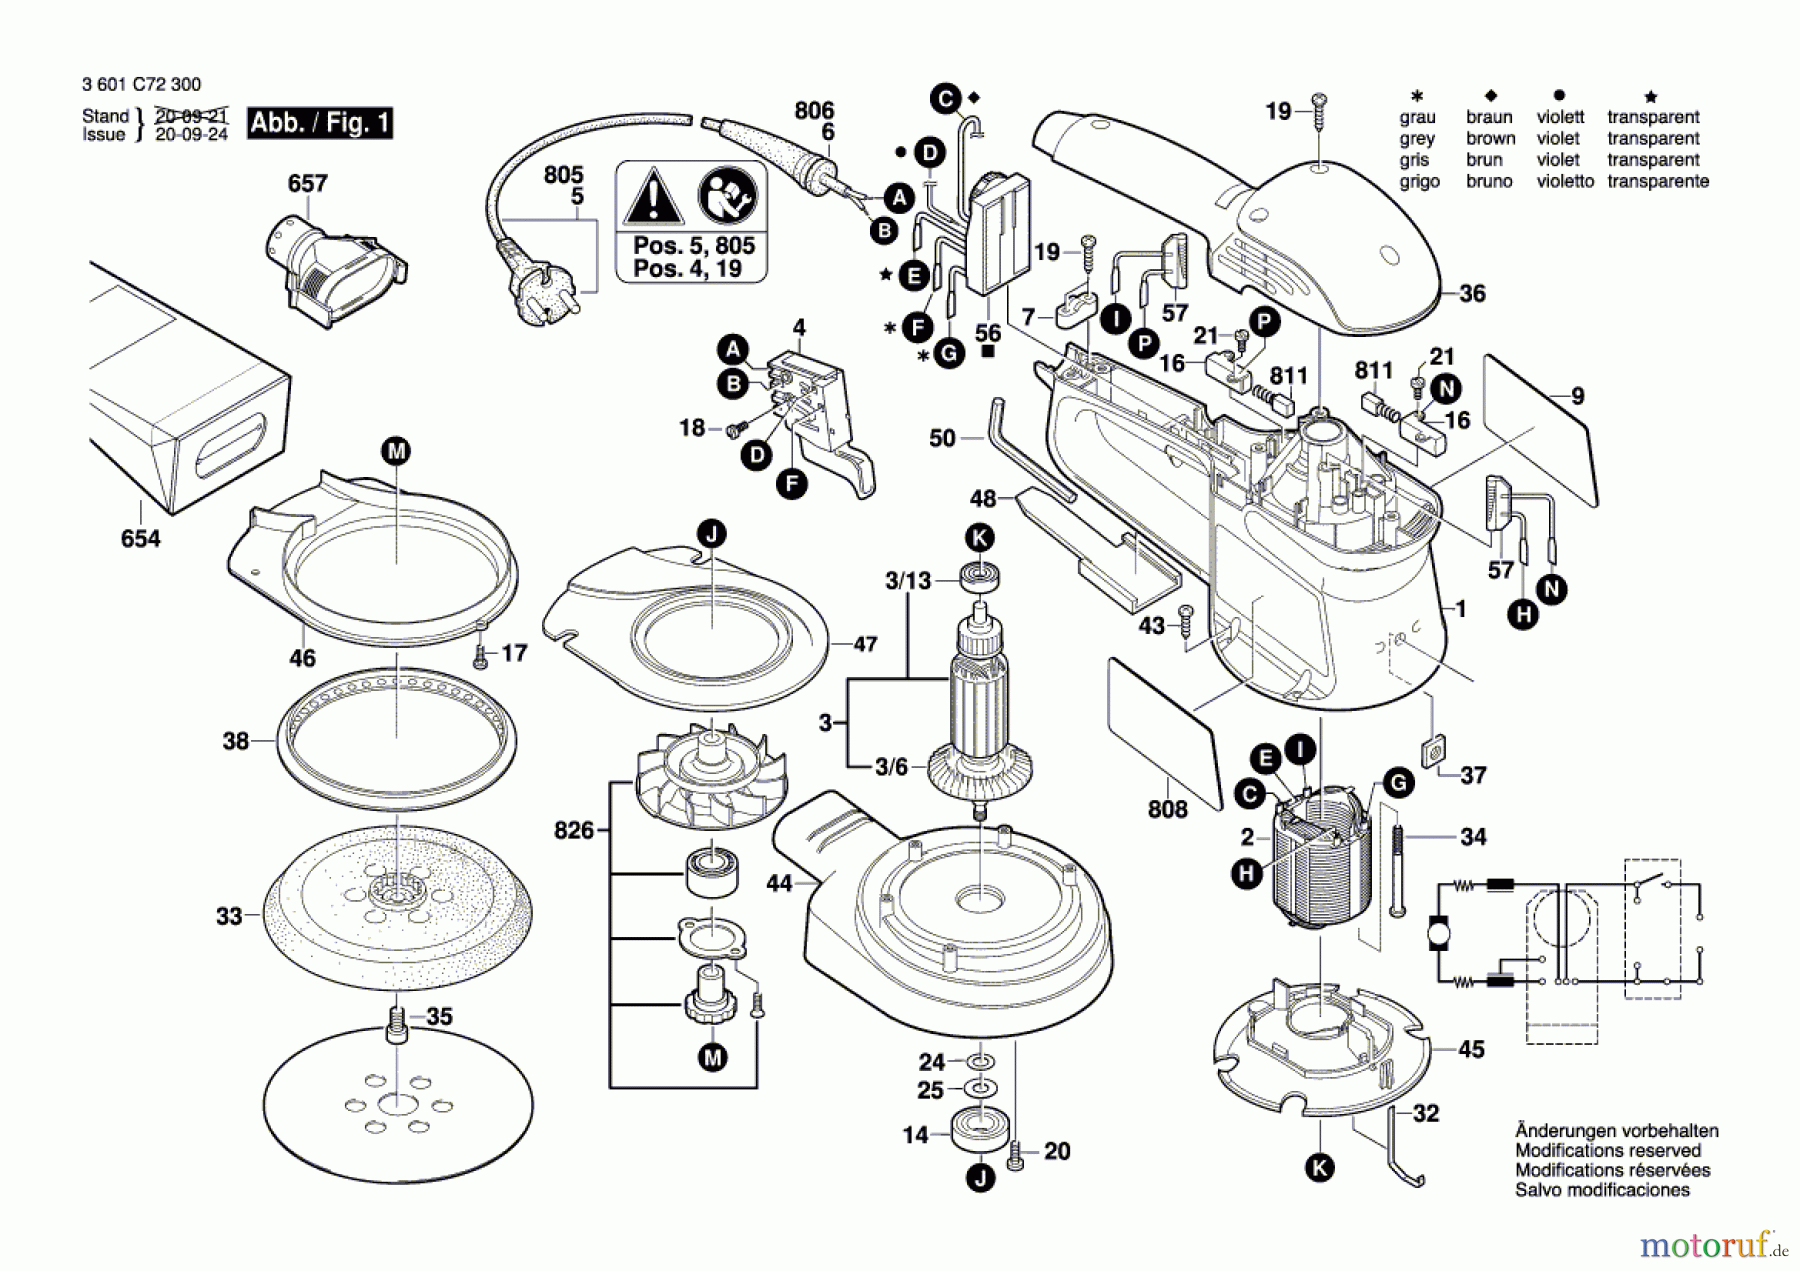  Bosch Werkzeug Exzenterschleifer GEX 34-150 Seite 1